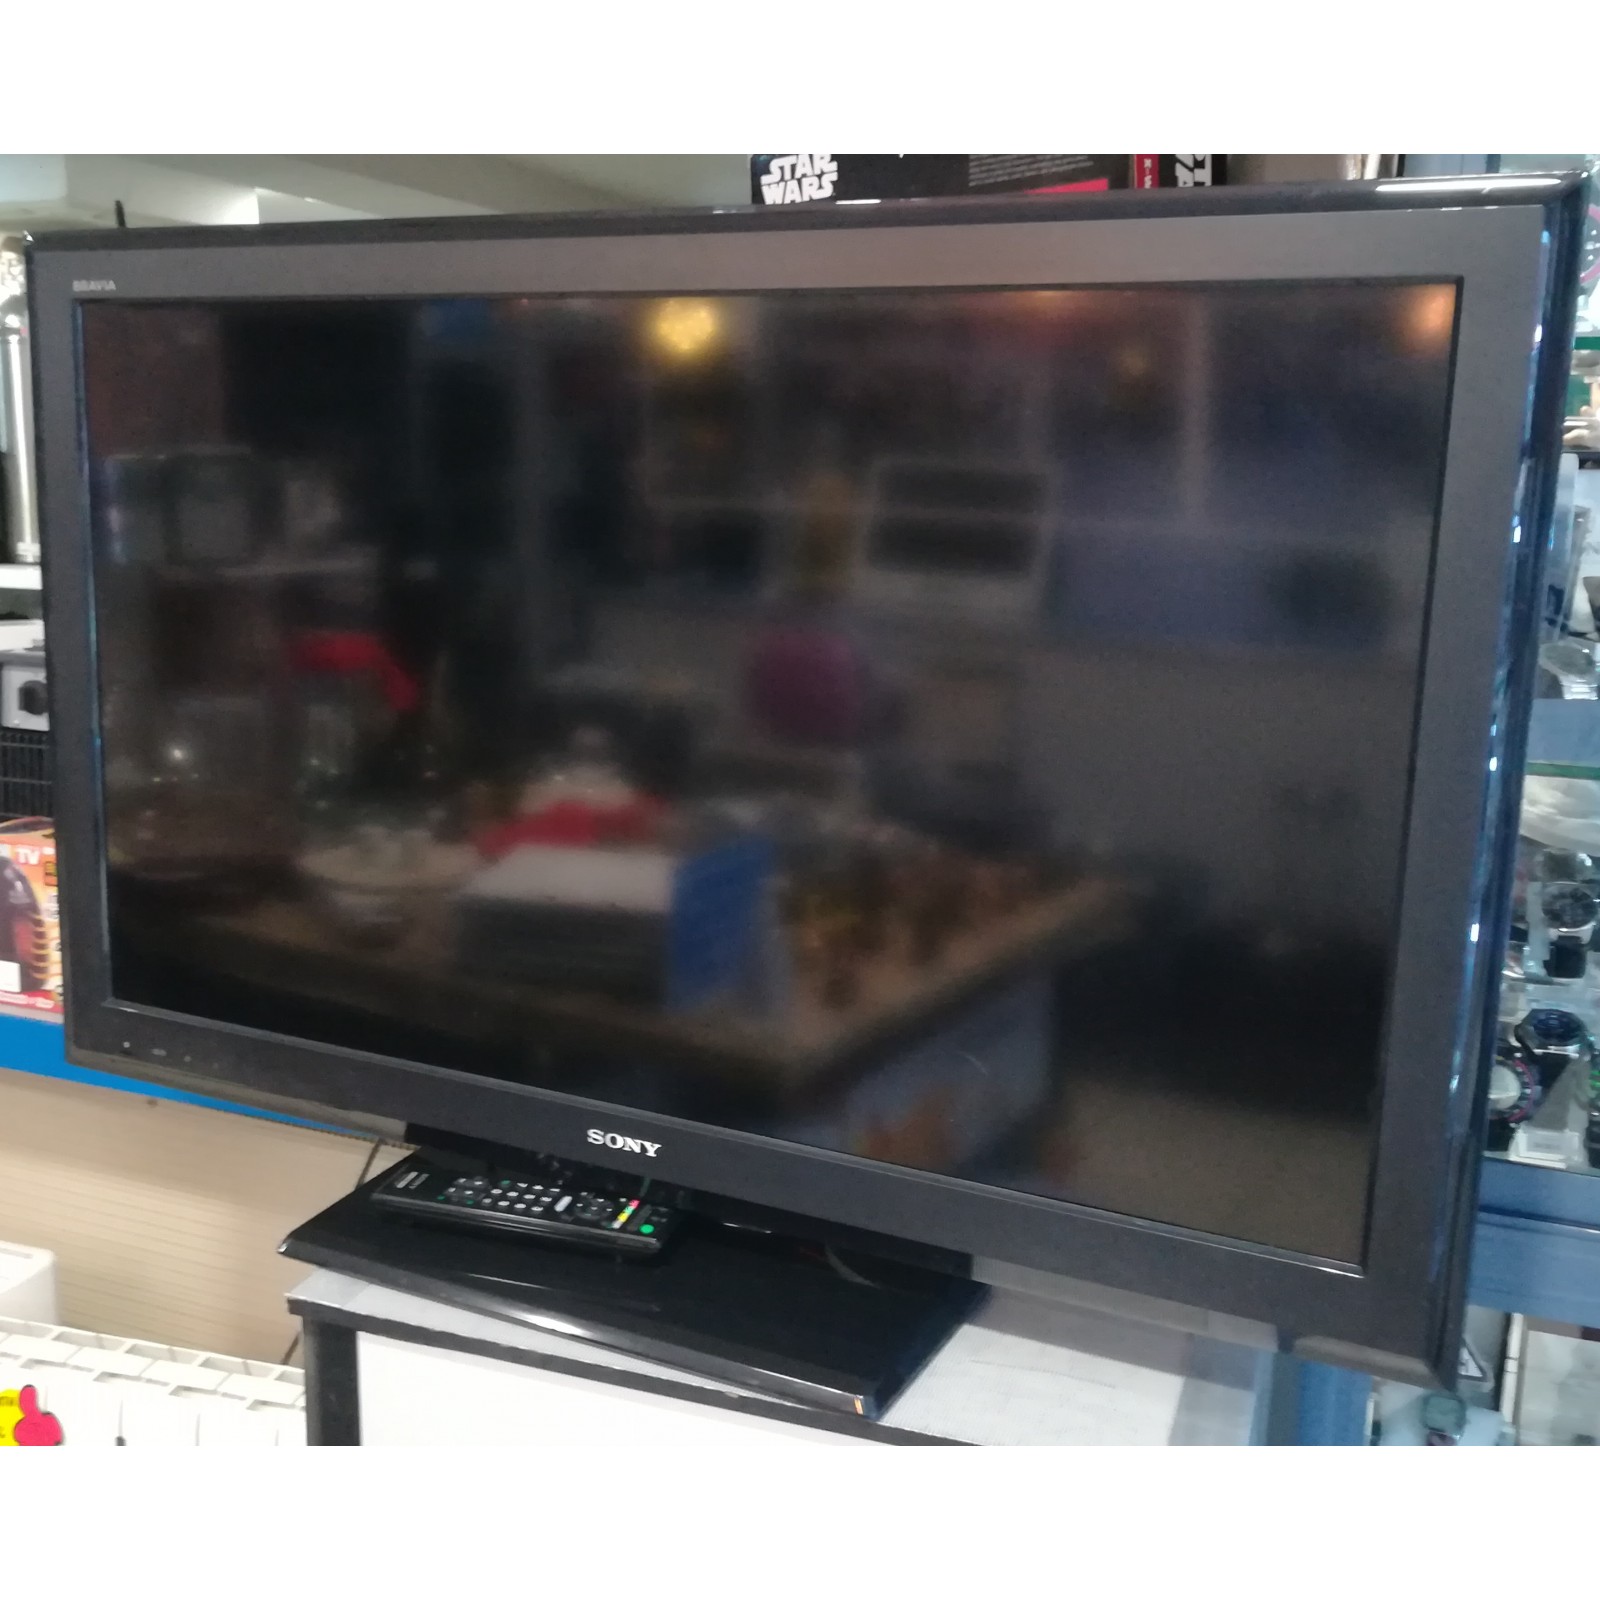 TV 40" LCD KDL-40P3600 TDT HDMI con mando